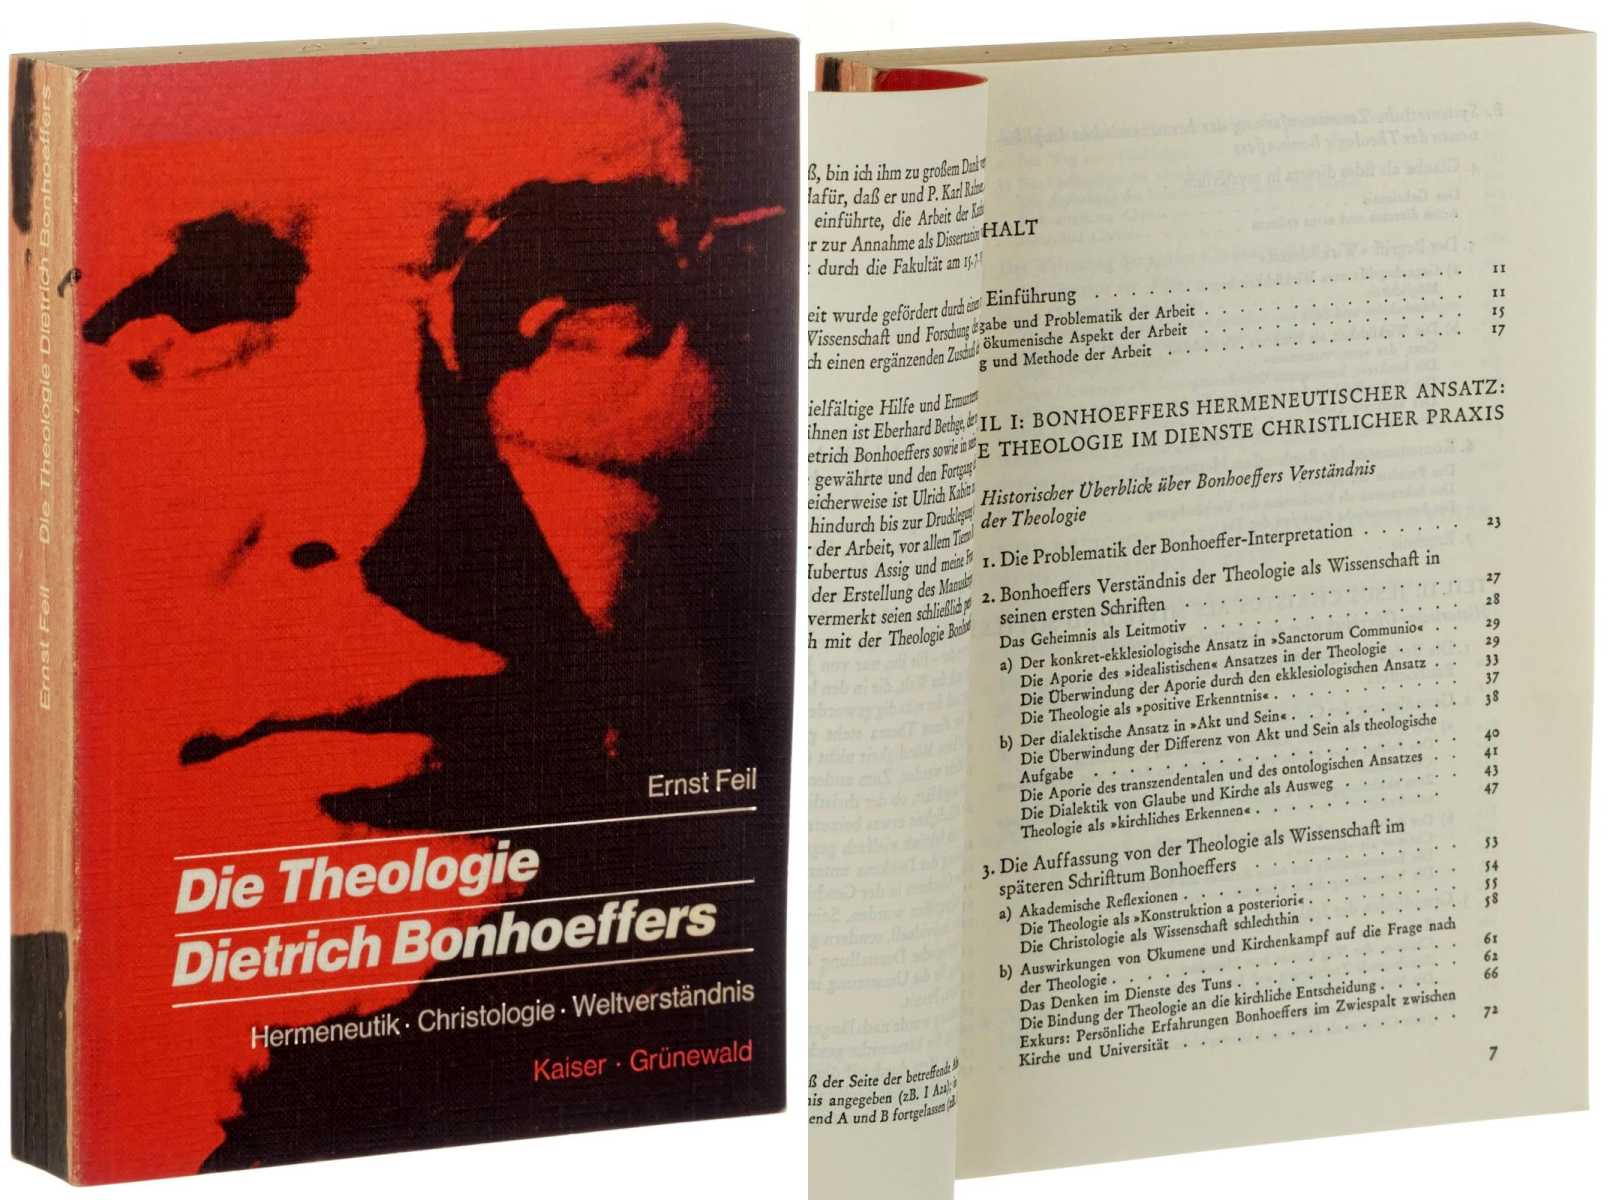 Feil, Ernst:  Die Theologie Dietrich Bonhoeffers. Hermeneutik, Christologie, Weltverständnis. 